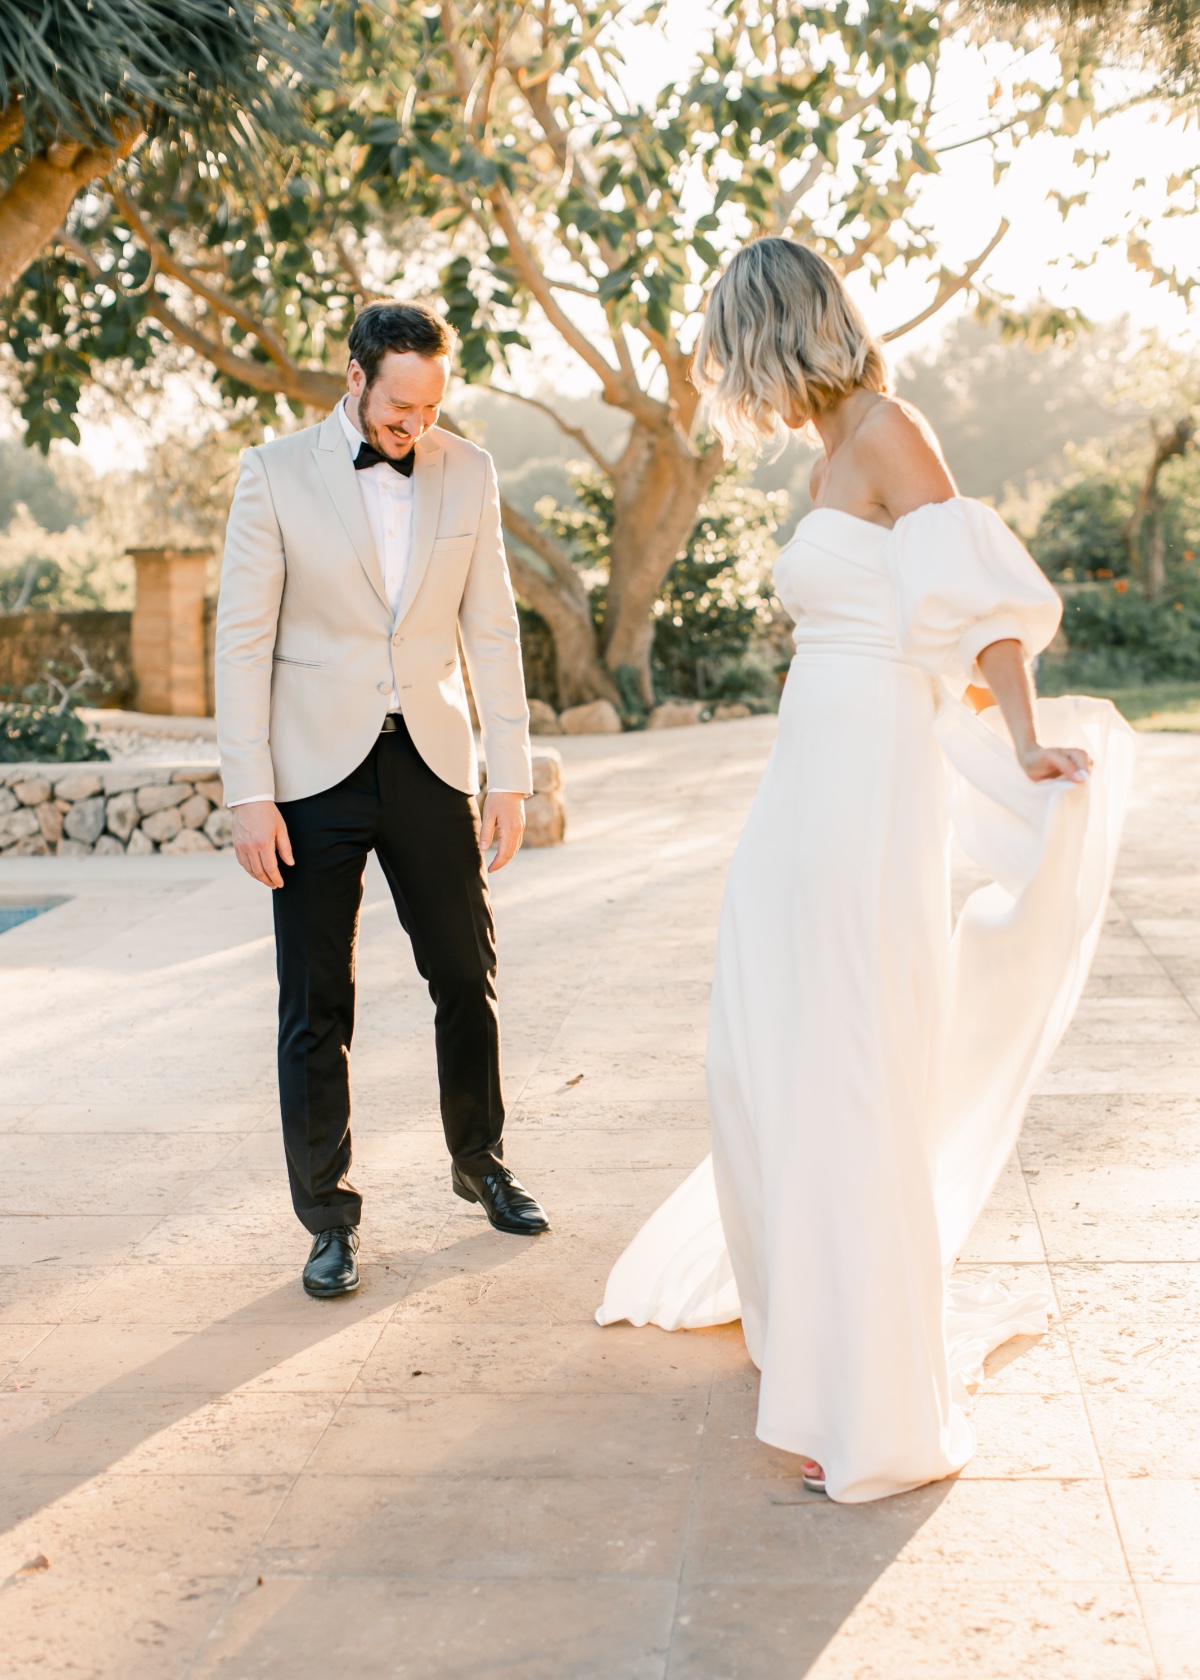 Mediterranean-inspired wedding dress